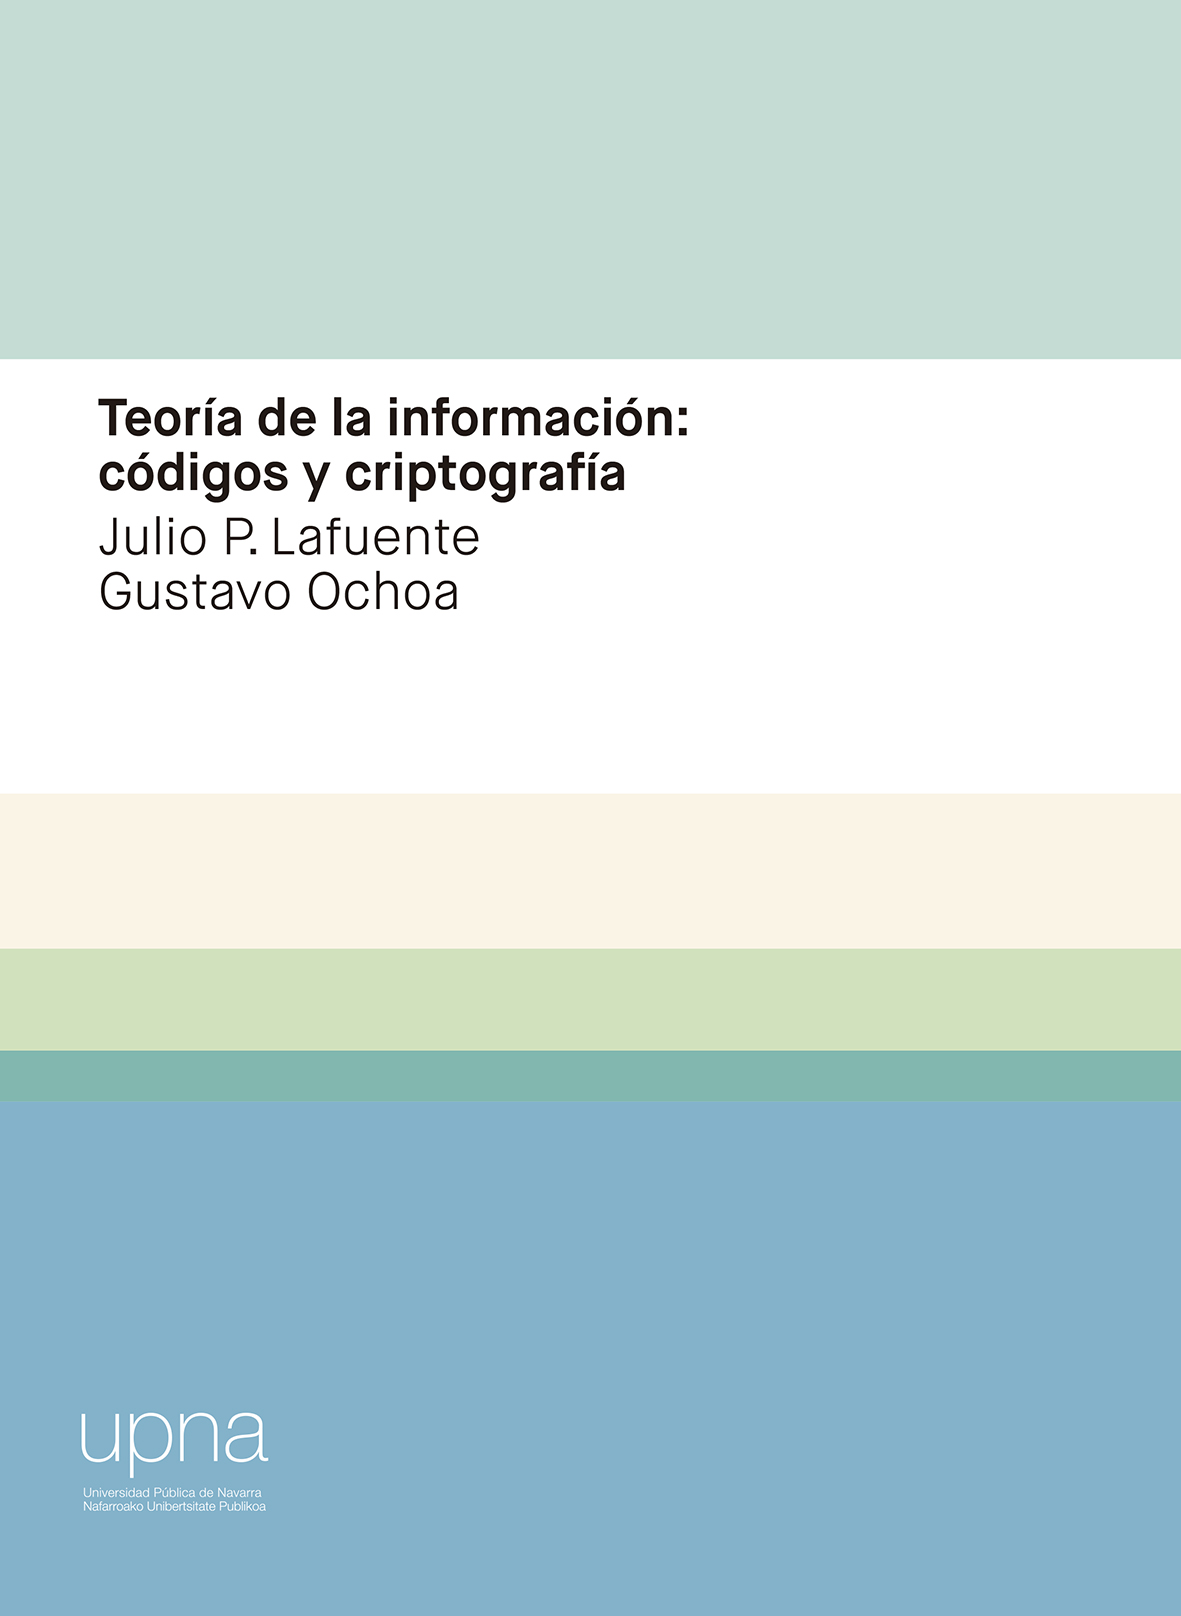 Imagen de portada del libro Teoría de la información